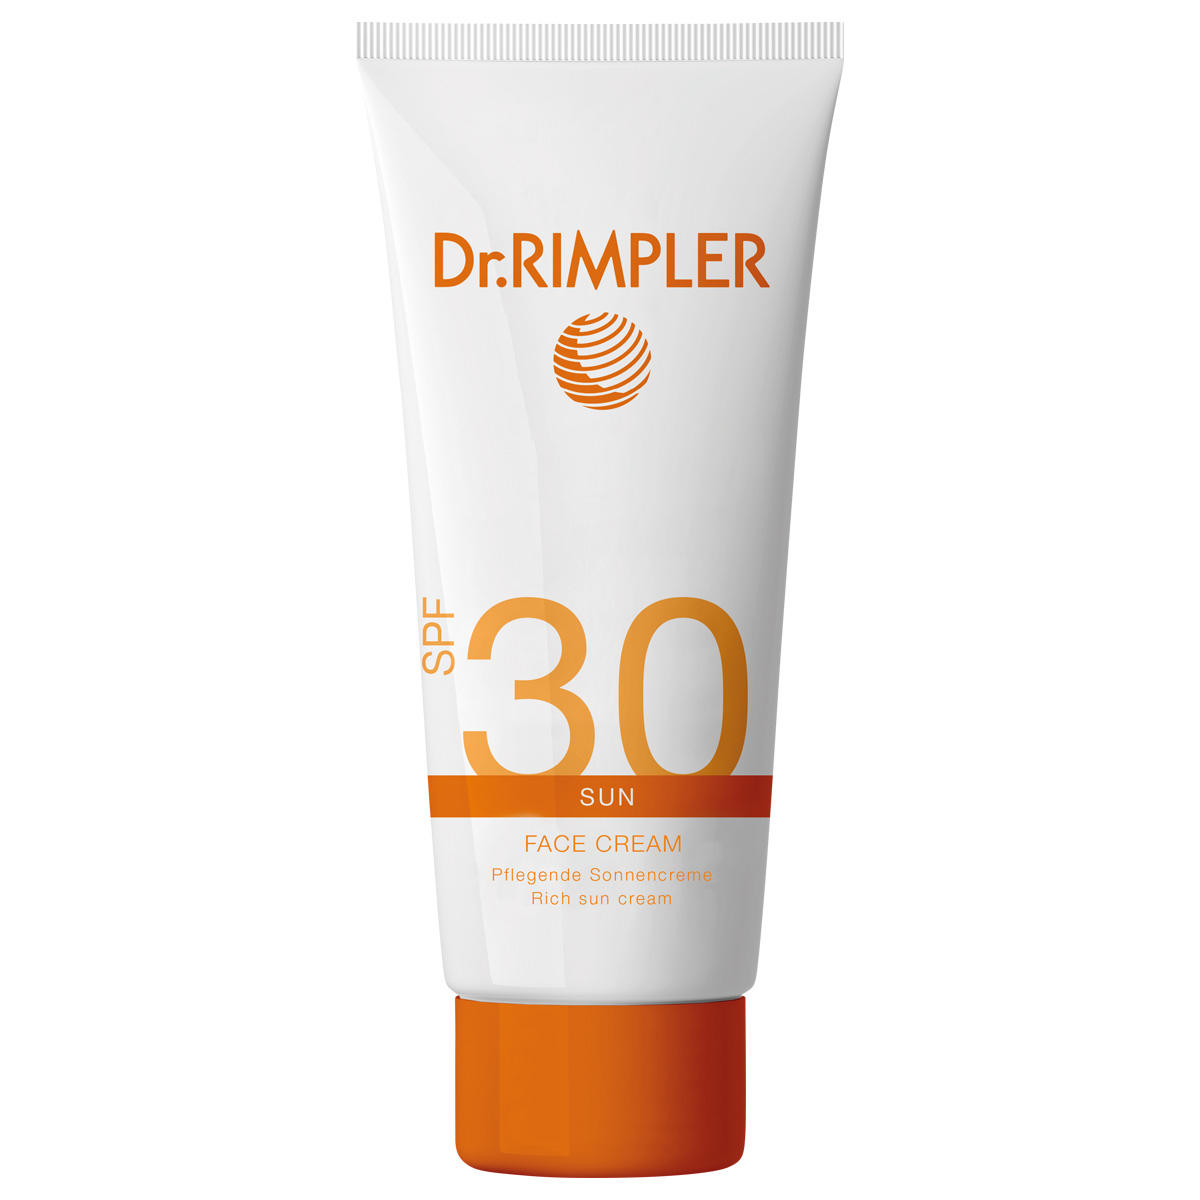 Dr. RIMPLER SUN Face Cream SPF 30 75 ml - 1